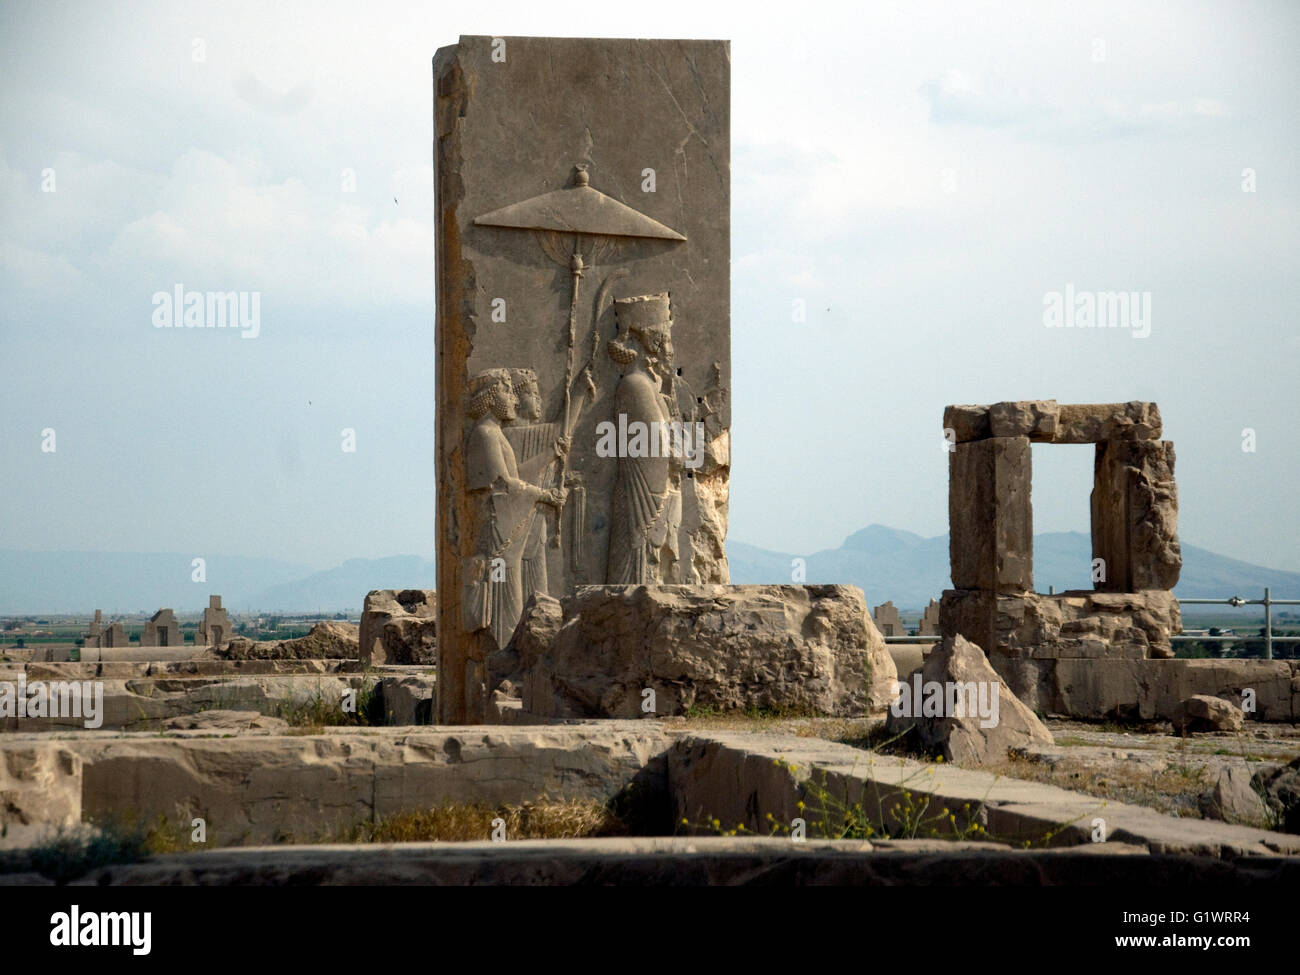 En Irán, las grandes ruinas de un complejo de palacio, Persépolis, una gran piedra tallada demuestra vívidamente gobernante y gobernados, quizás un emperador y asistentes. Que precisamente no es clara Foto de stock